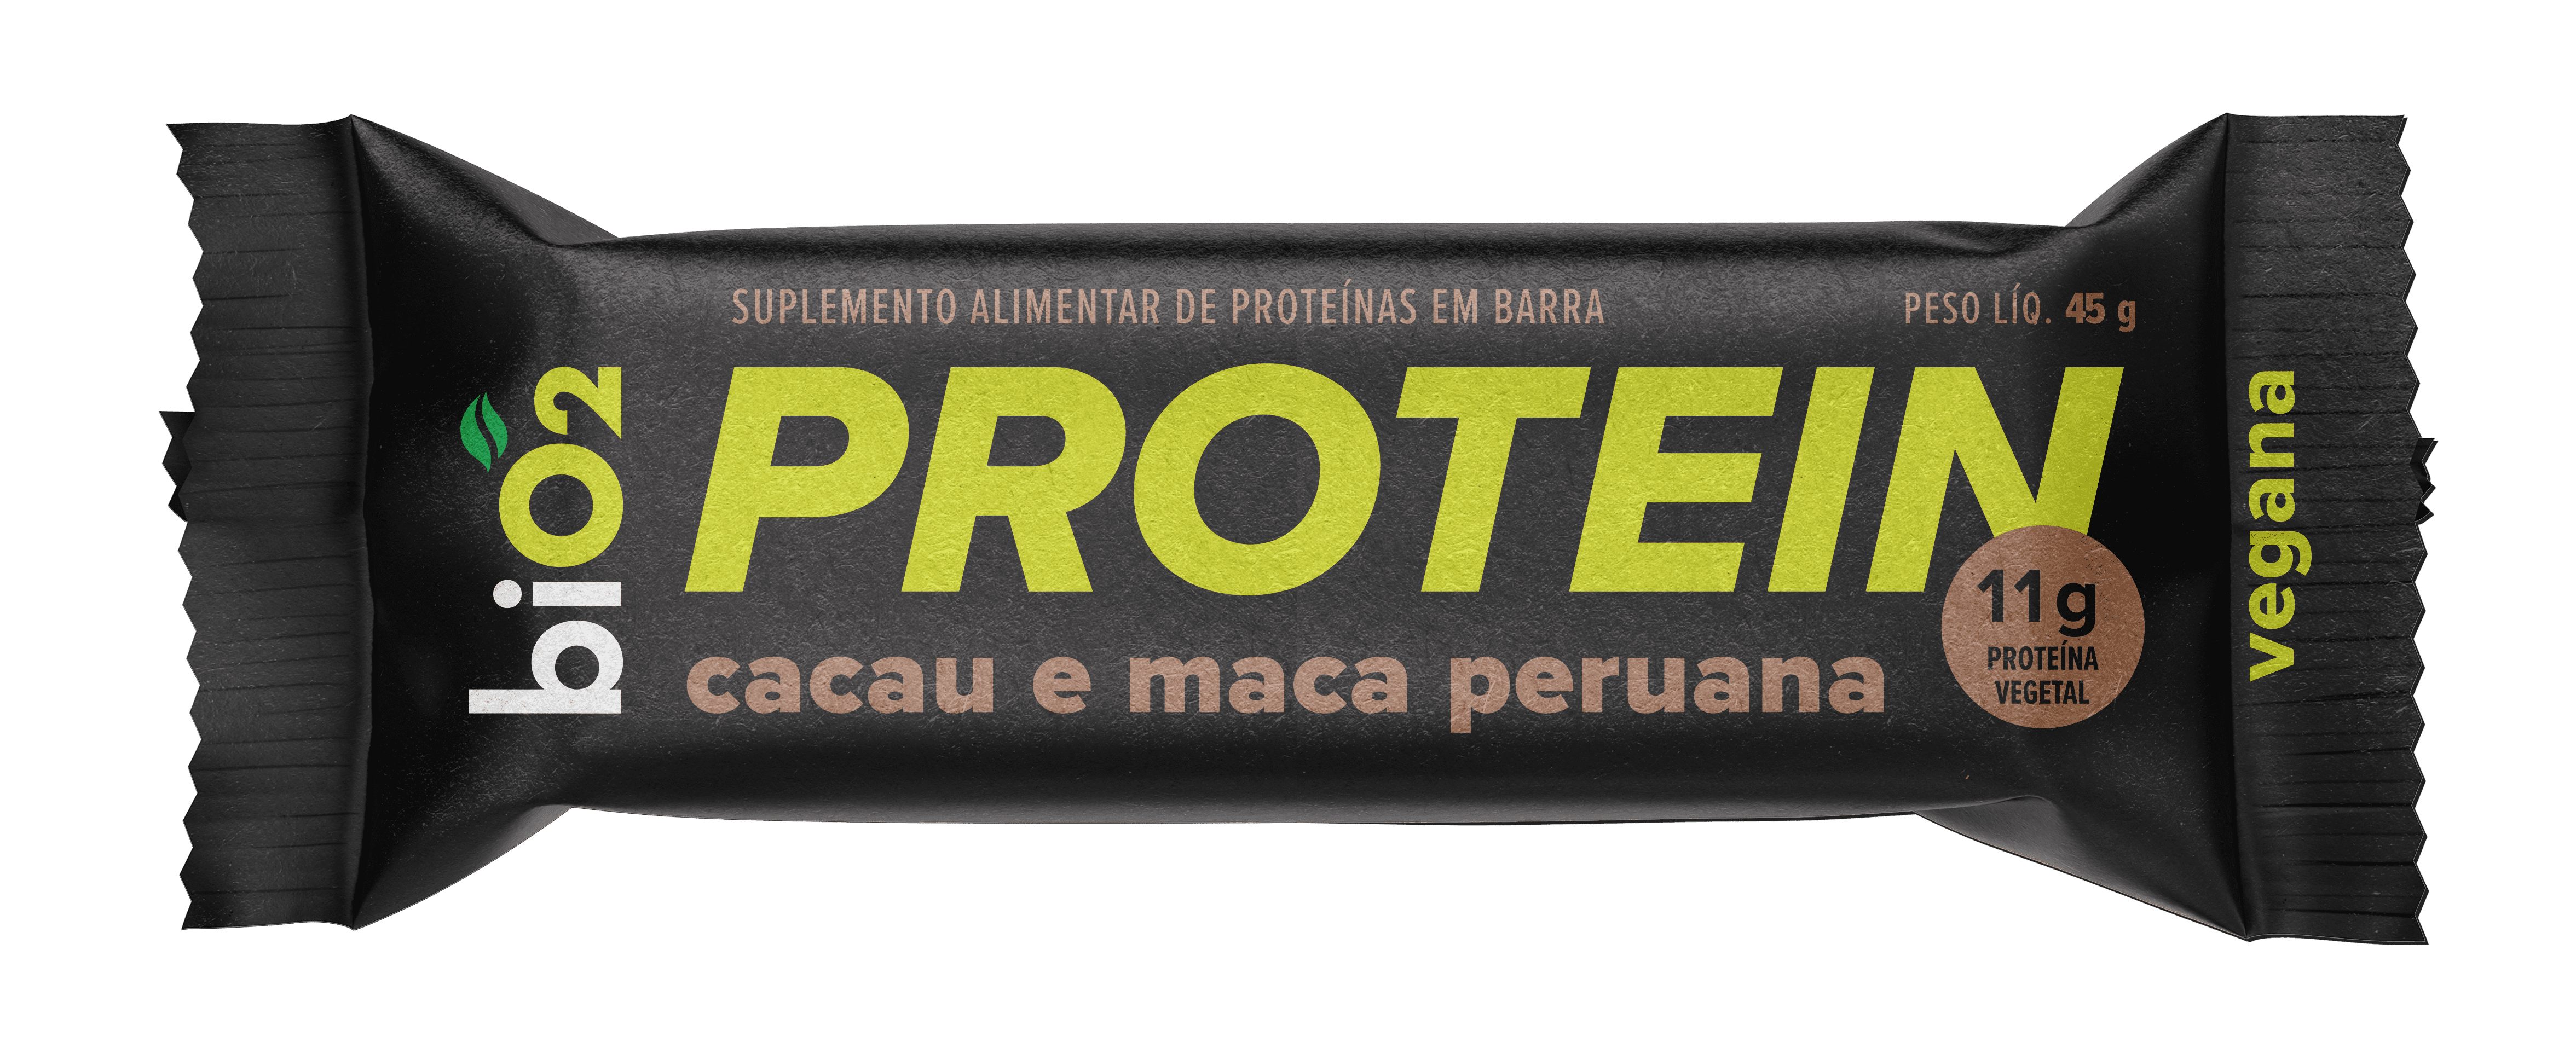 Barra De Proteína Vegana Bio2 Protein Cacau, Maca Peruana E Pasta De Amendoim 45g